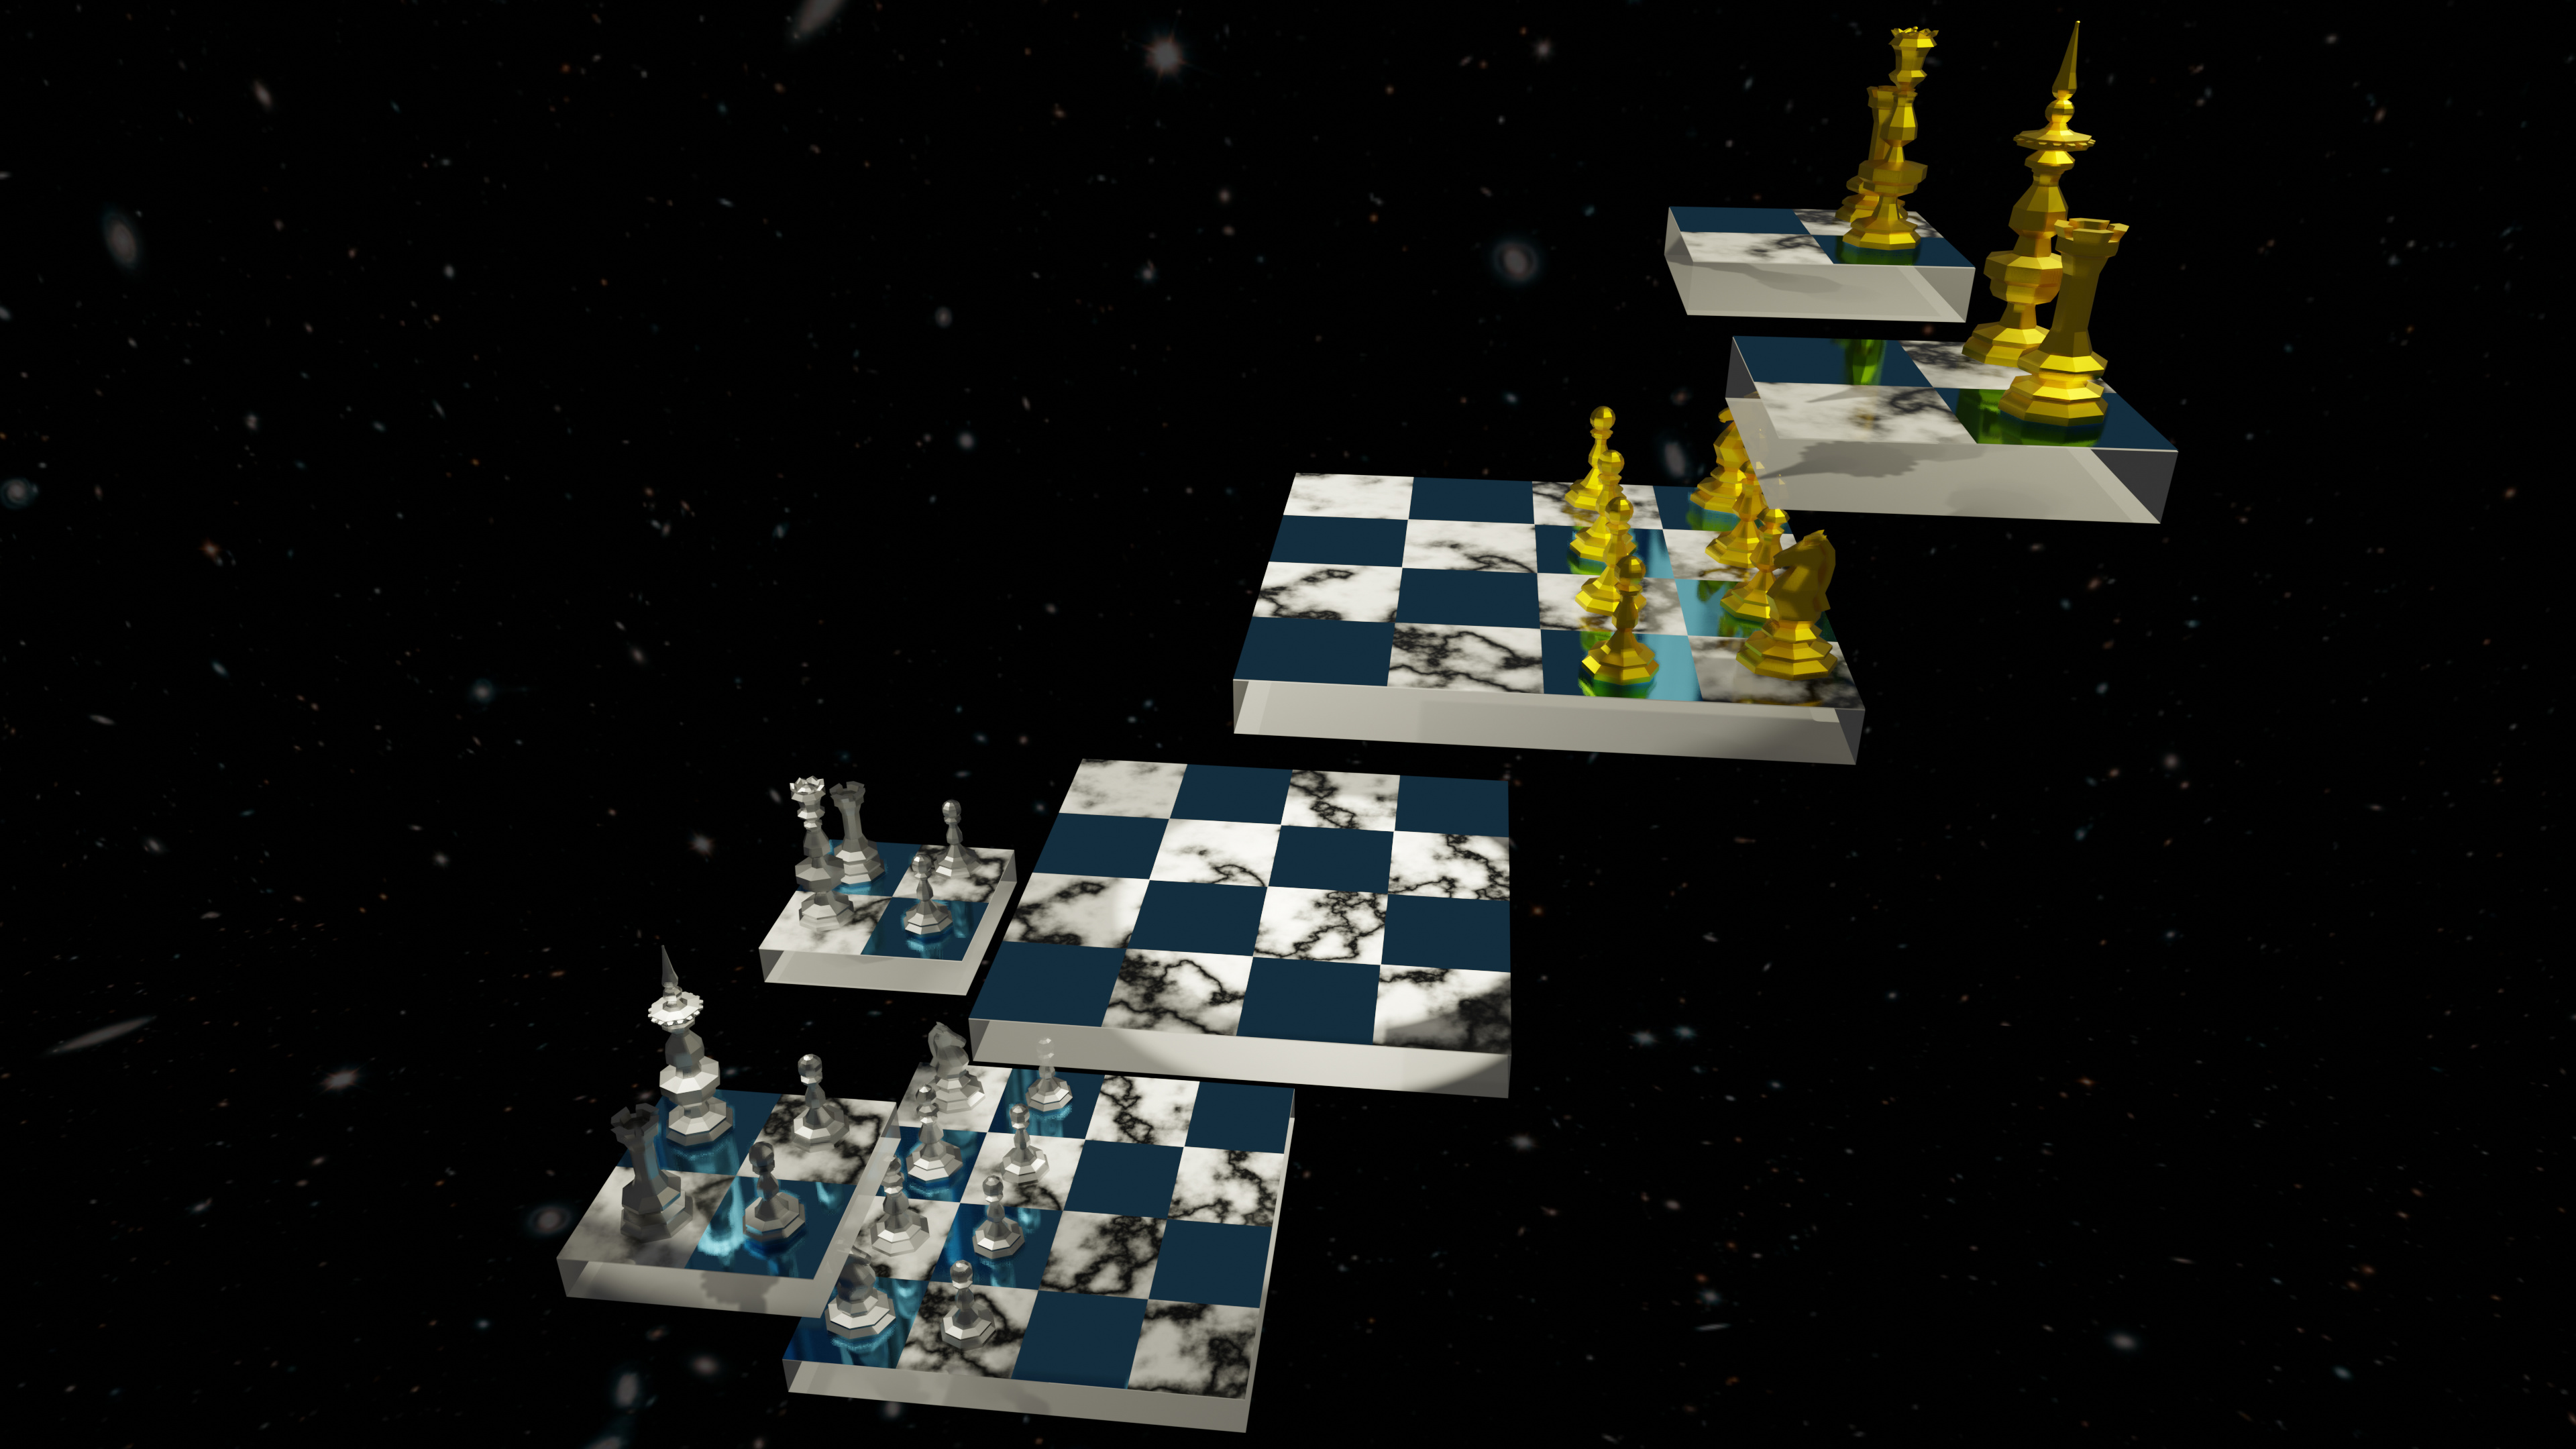 4d chess star trek